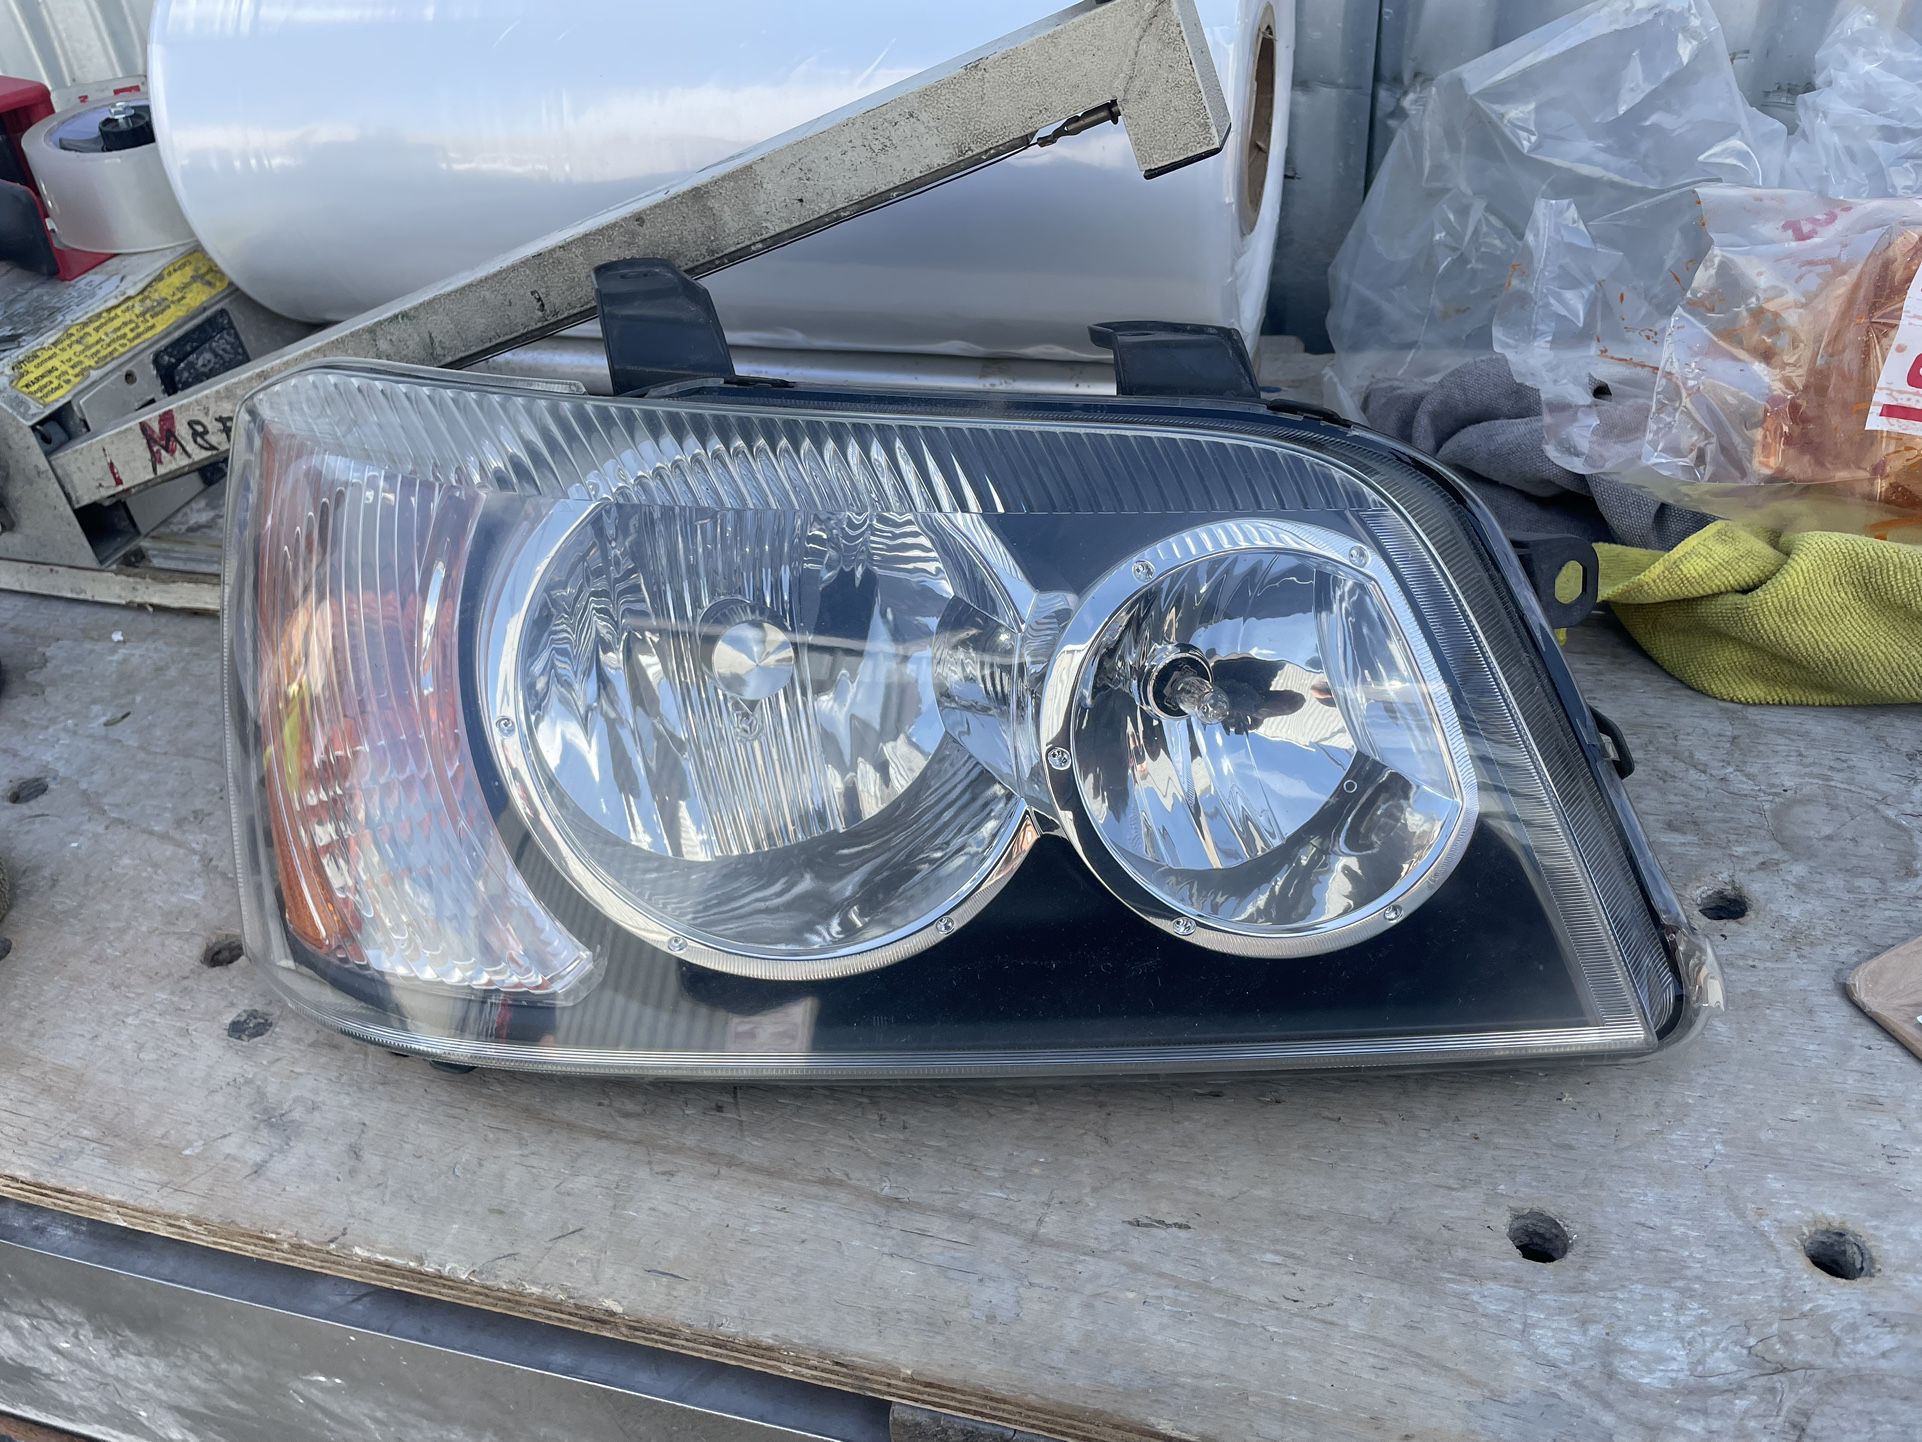 2001-2003 Toyota Highlander Right Headlight 